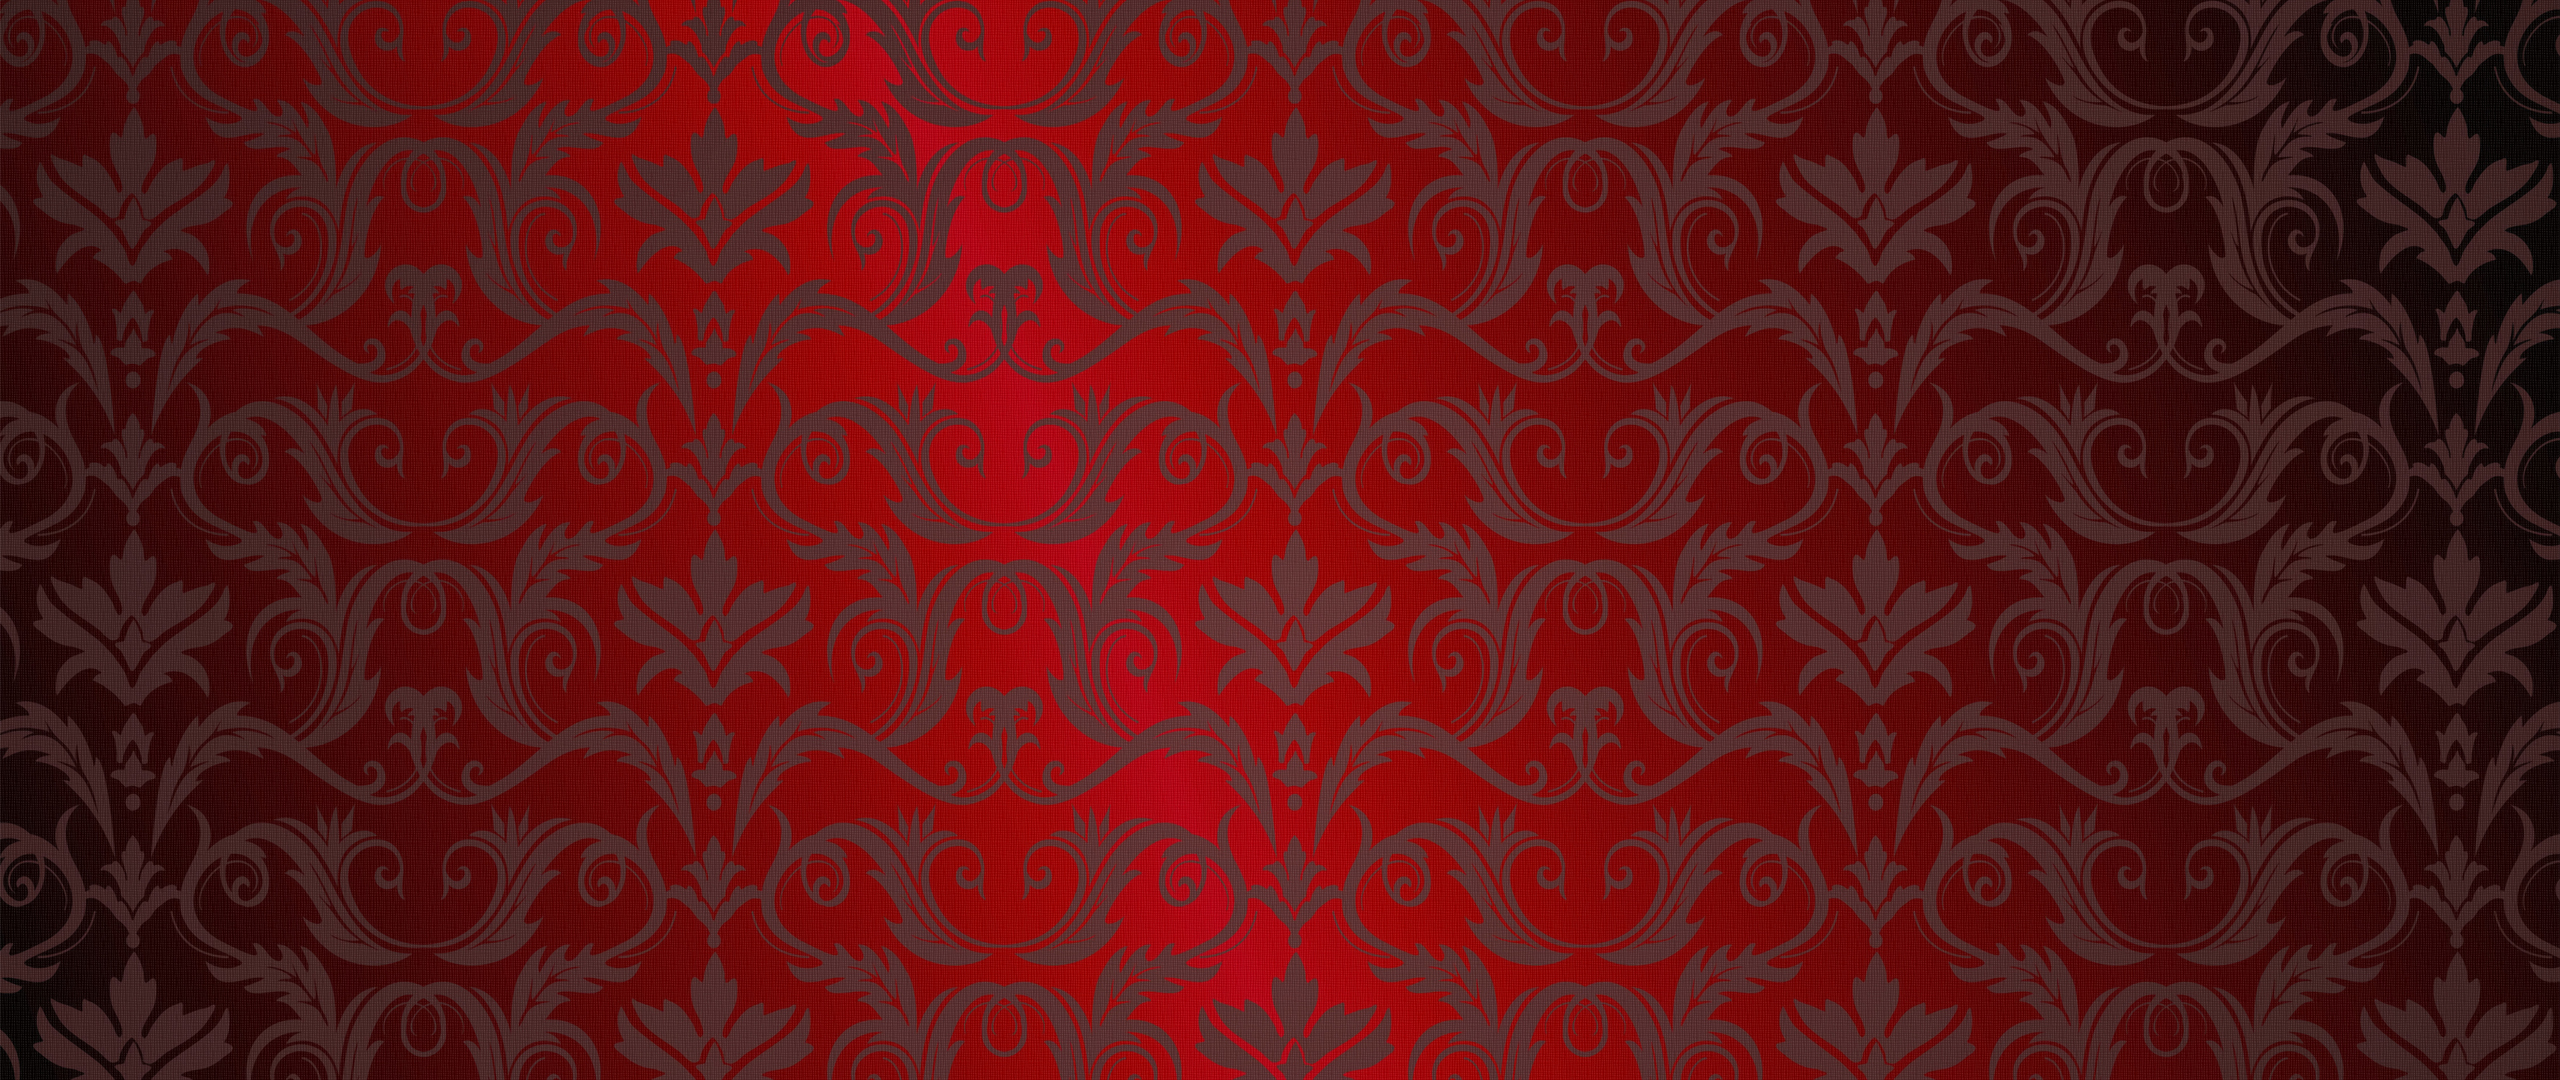 Red background ornament - vintage design: Bạn yêu thích thiết kế cổ điển với những họa tiết độc đáo và mang tính thẩm mỹ cao? Hãy đến với những hình ảnh về Red background ornament - một họa tiết đầy sắc màu trên nền đỏ đậm mang đến cho bạn sự cổ điển và lịch lãm.